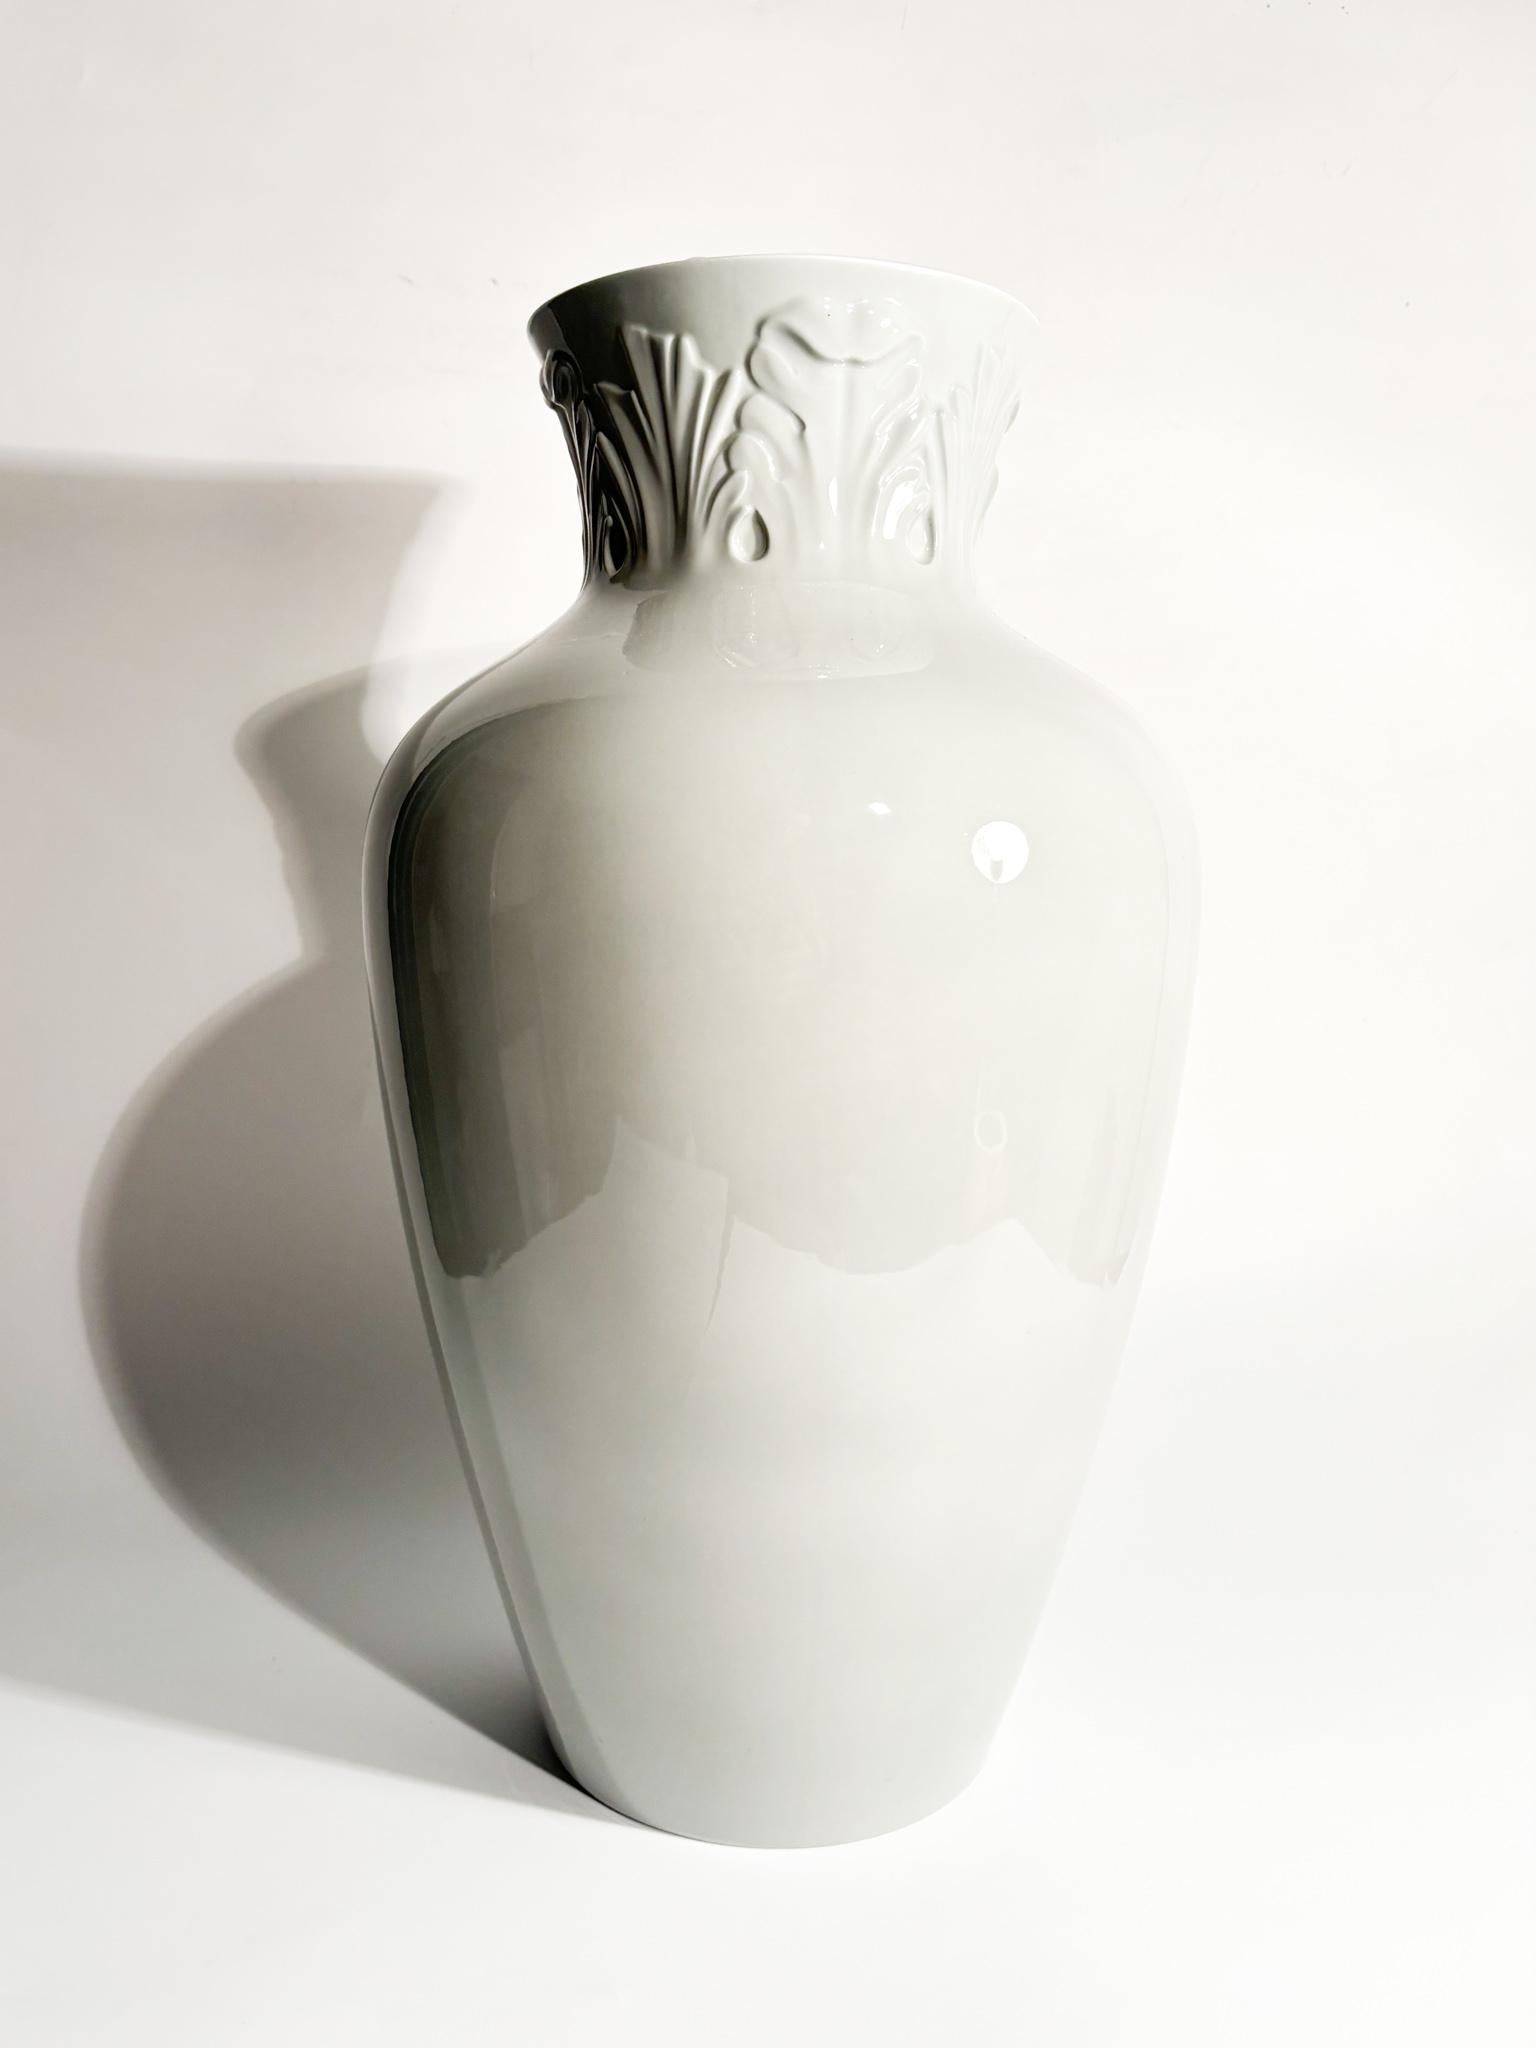 Gray porcelain vase by Richard Ginori, belonging to the 